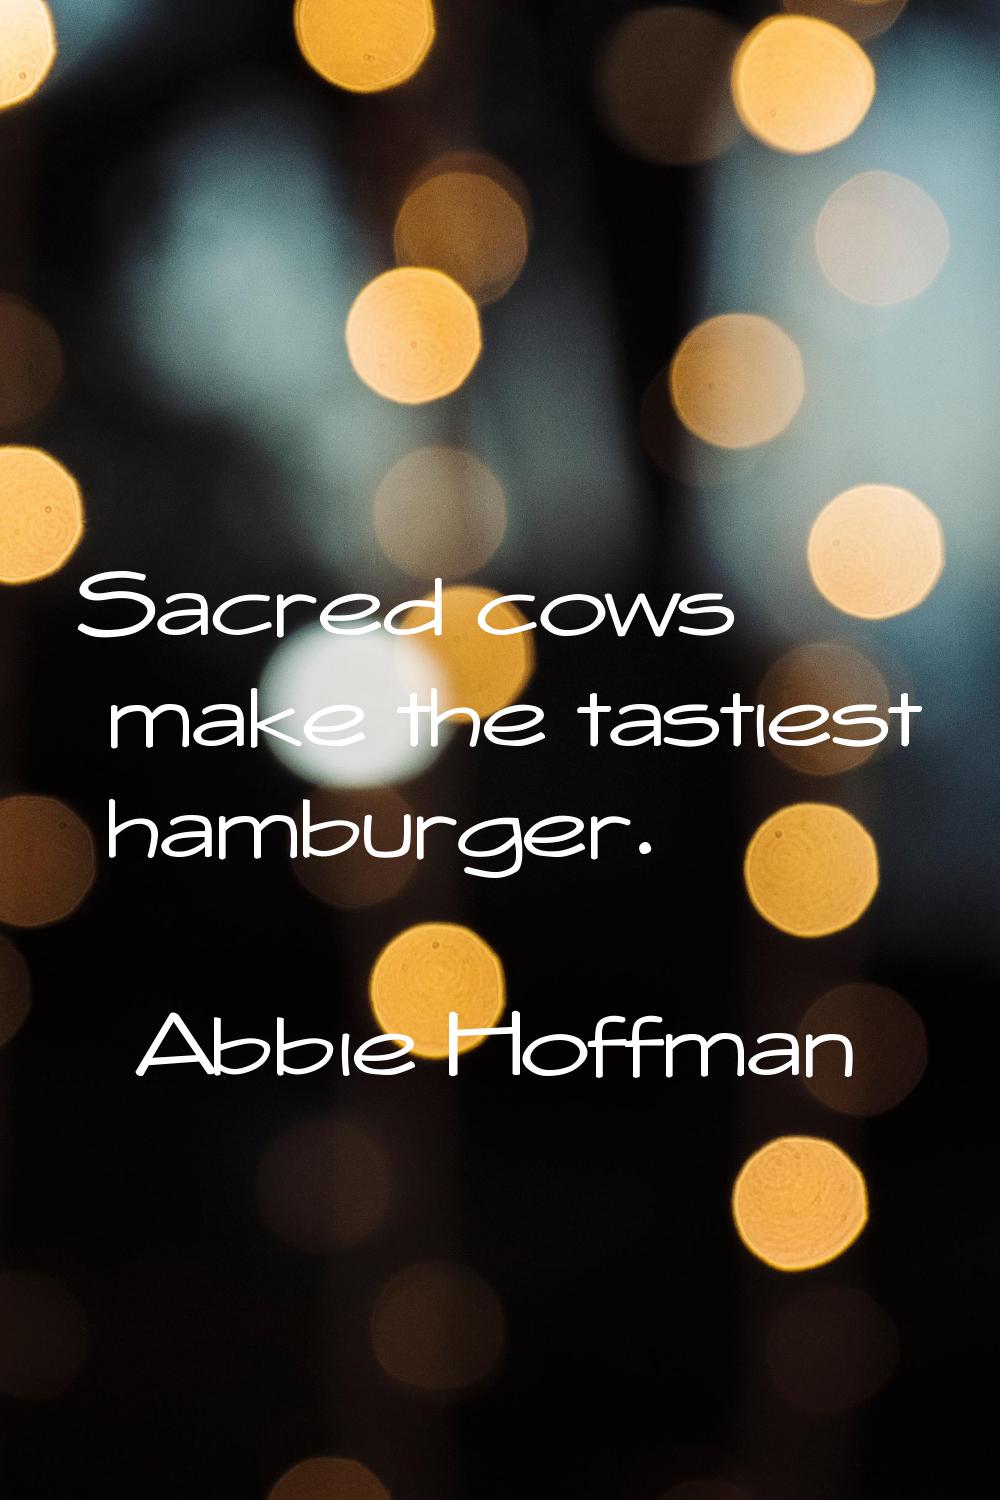 Sacred cows make the tastiest hamburger.